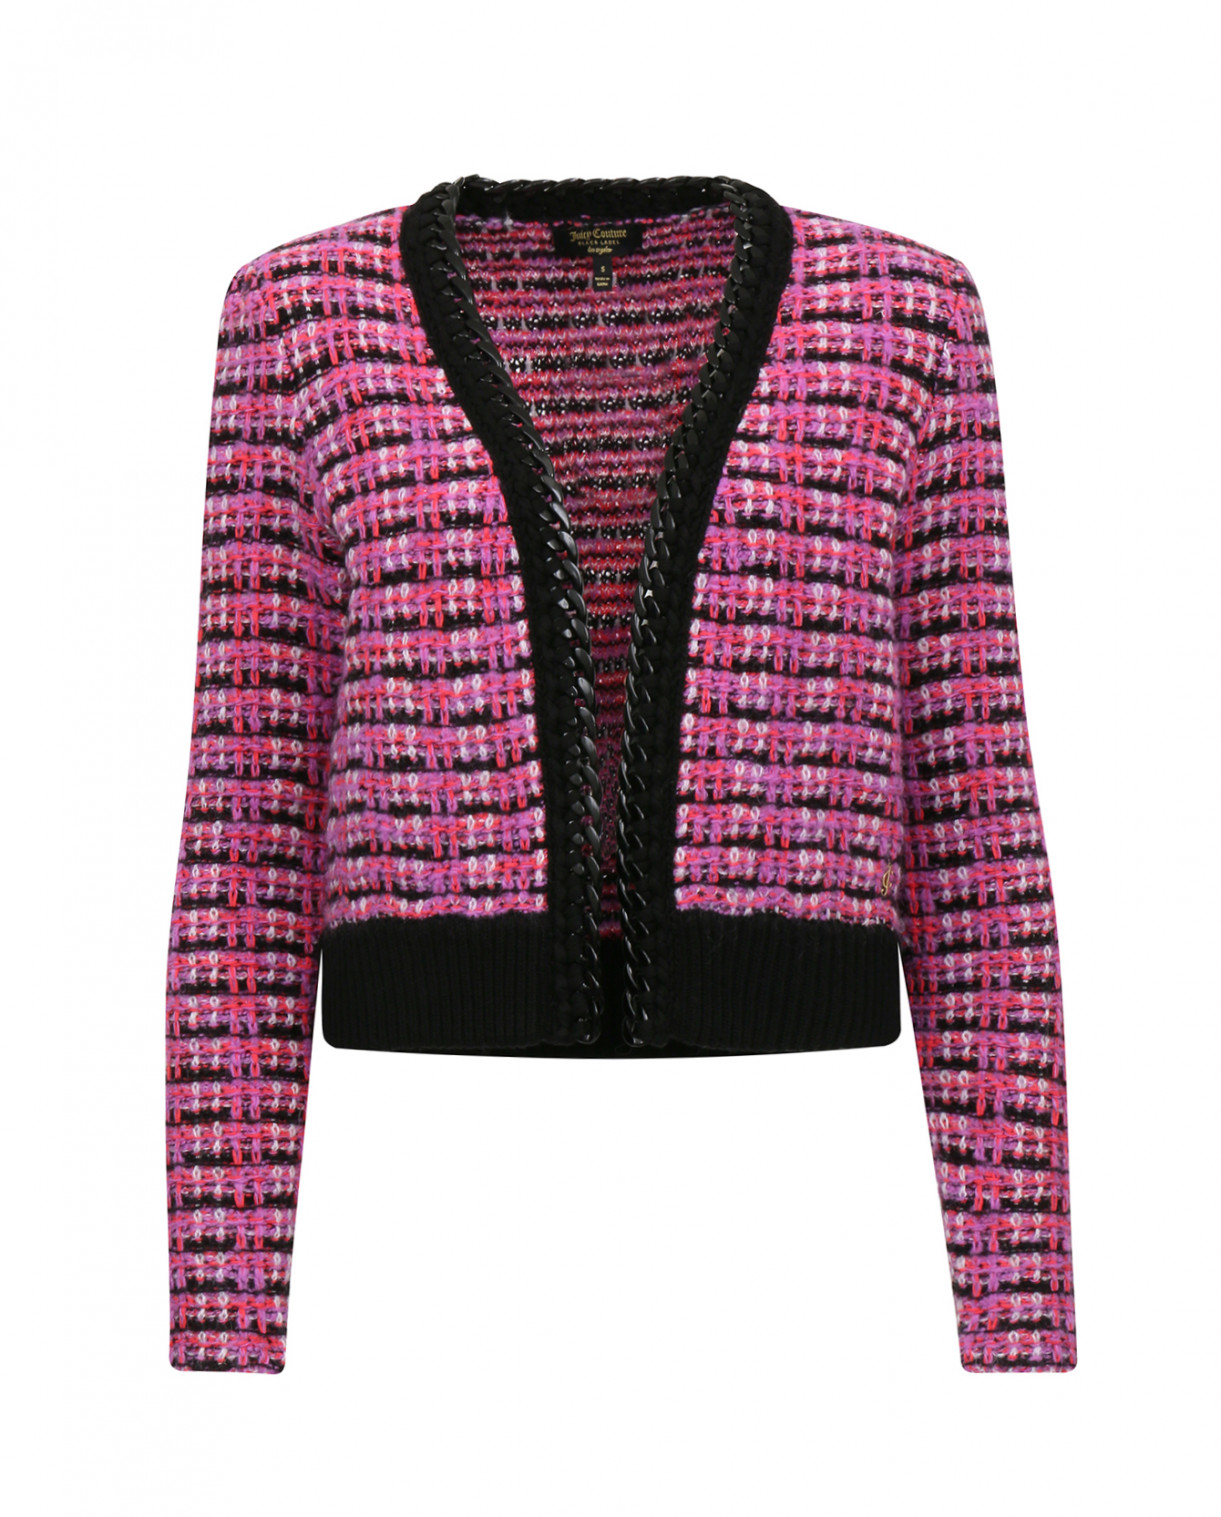 Кардиган с узором декорированный цепью Juicy Couture  –  Общий вид  – Цвет:  Узор